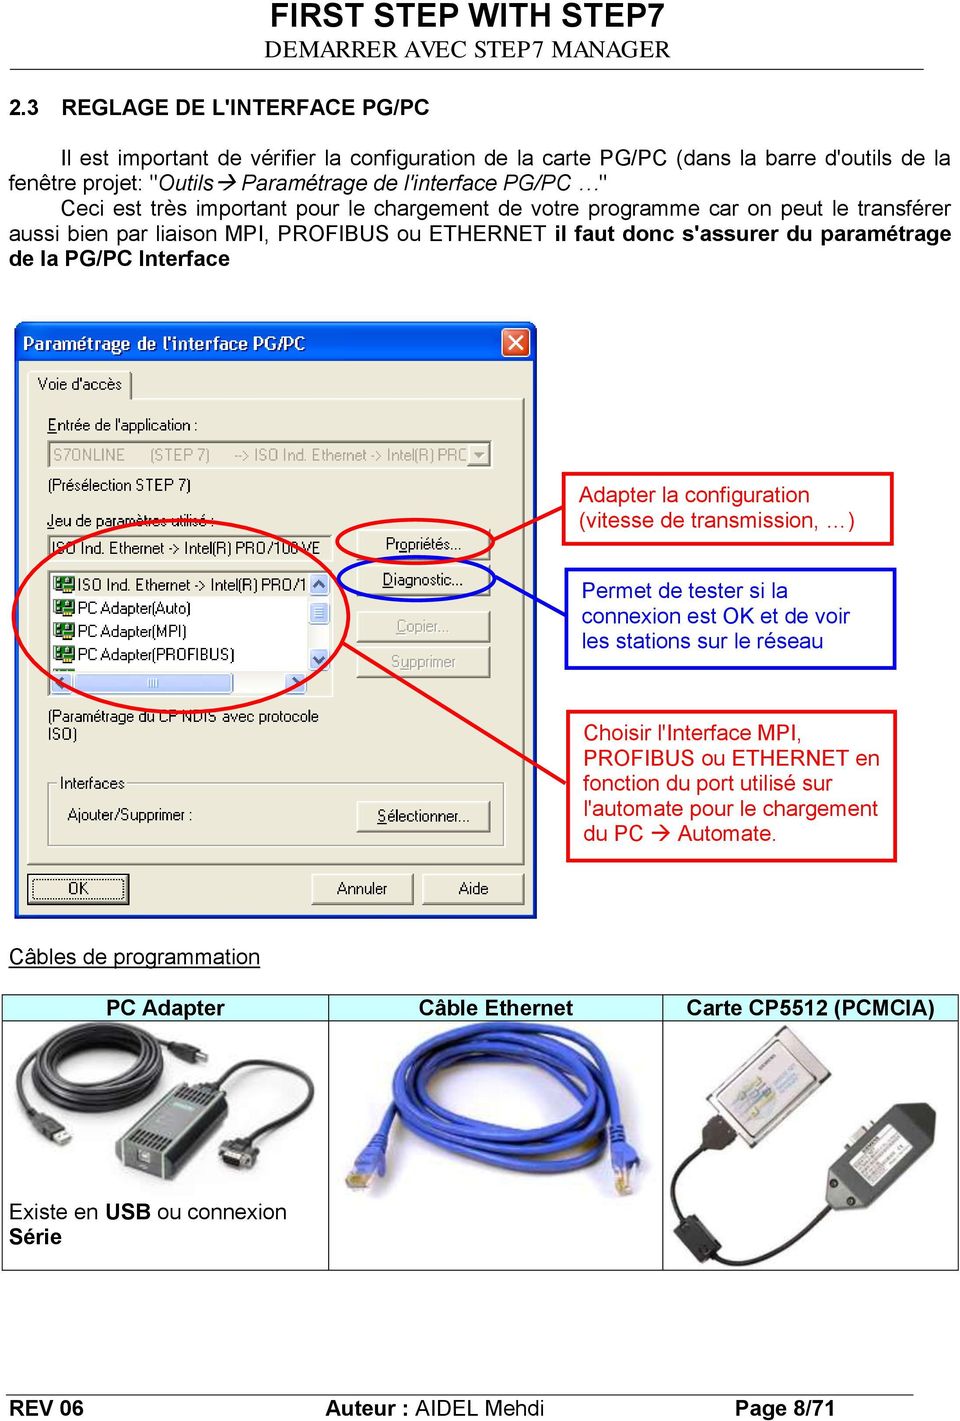 Interface Adapter la configuration (vitesse de transmission, ) Permet de tester si la connexion est OK et de voir les stations sur le réseau Choisir l'interface MPI, PROFIBUS ou ETHERNET en fonction